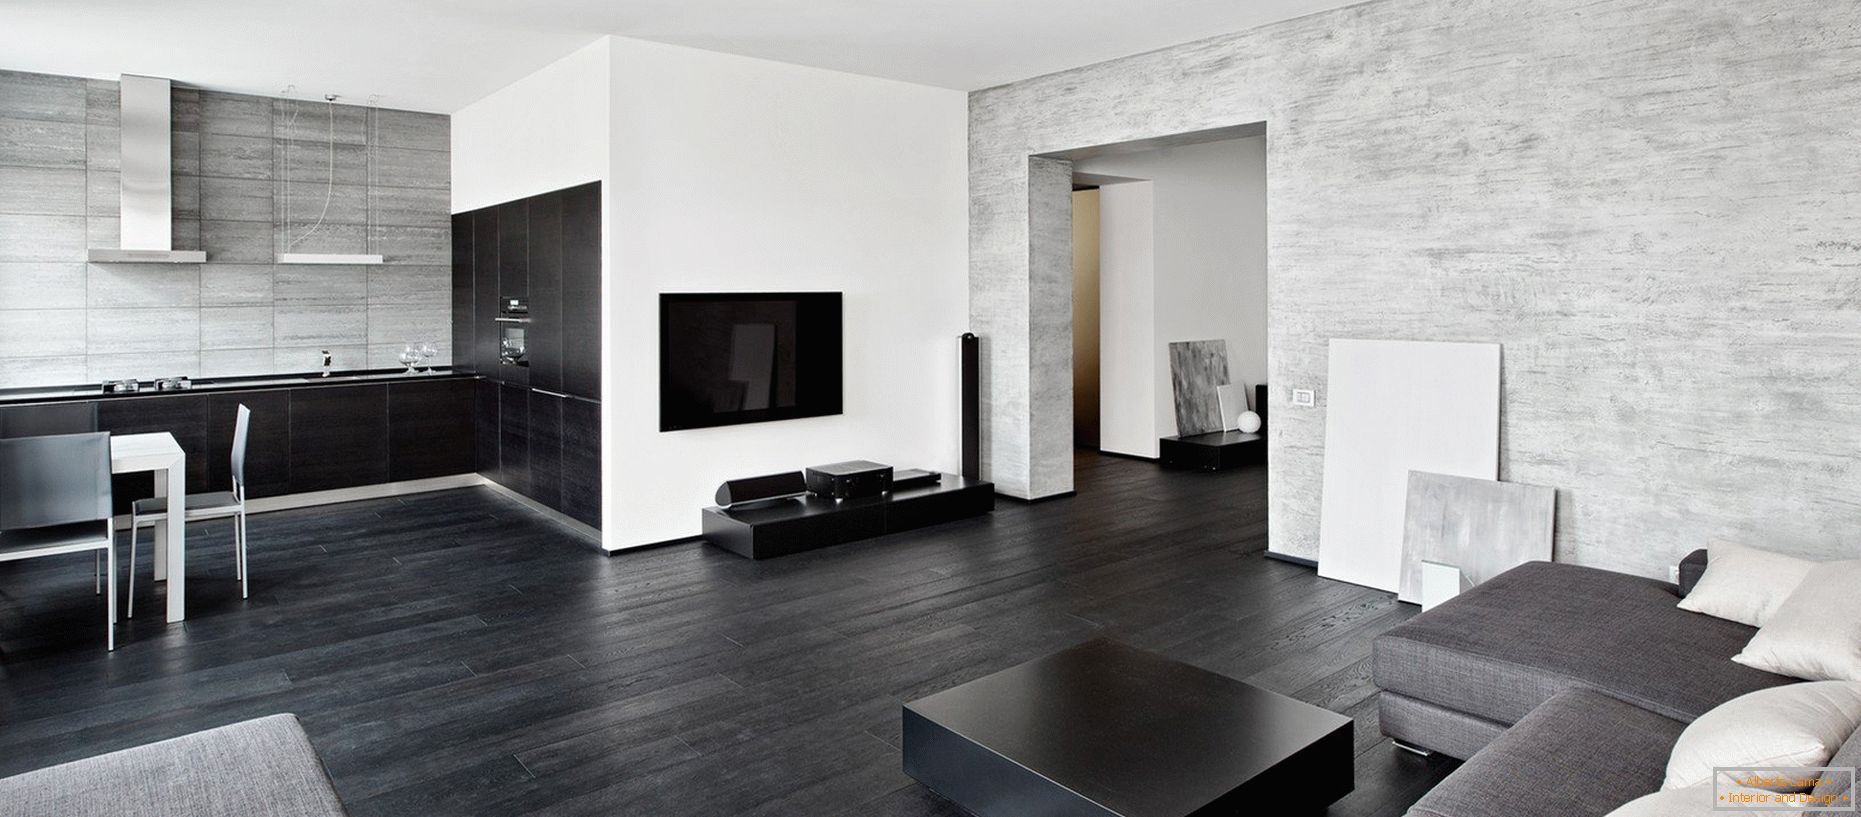 Black-white-gray walls in the interior